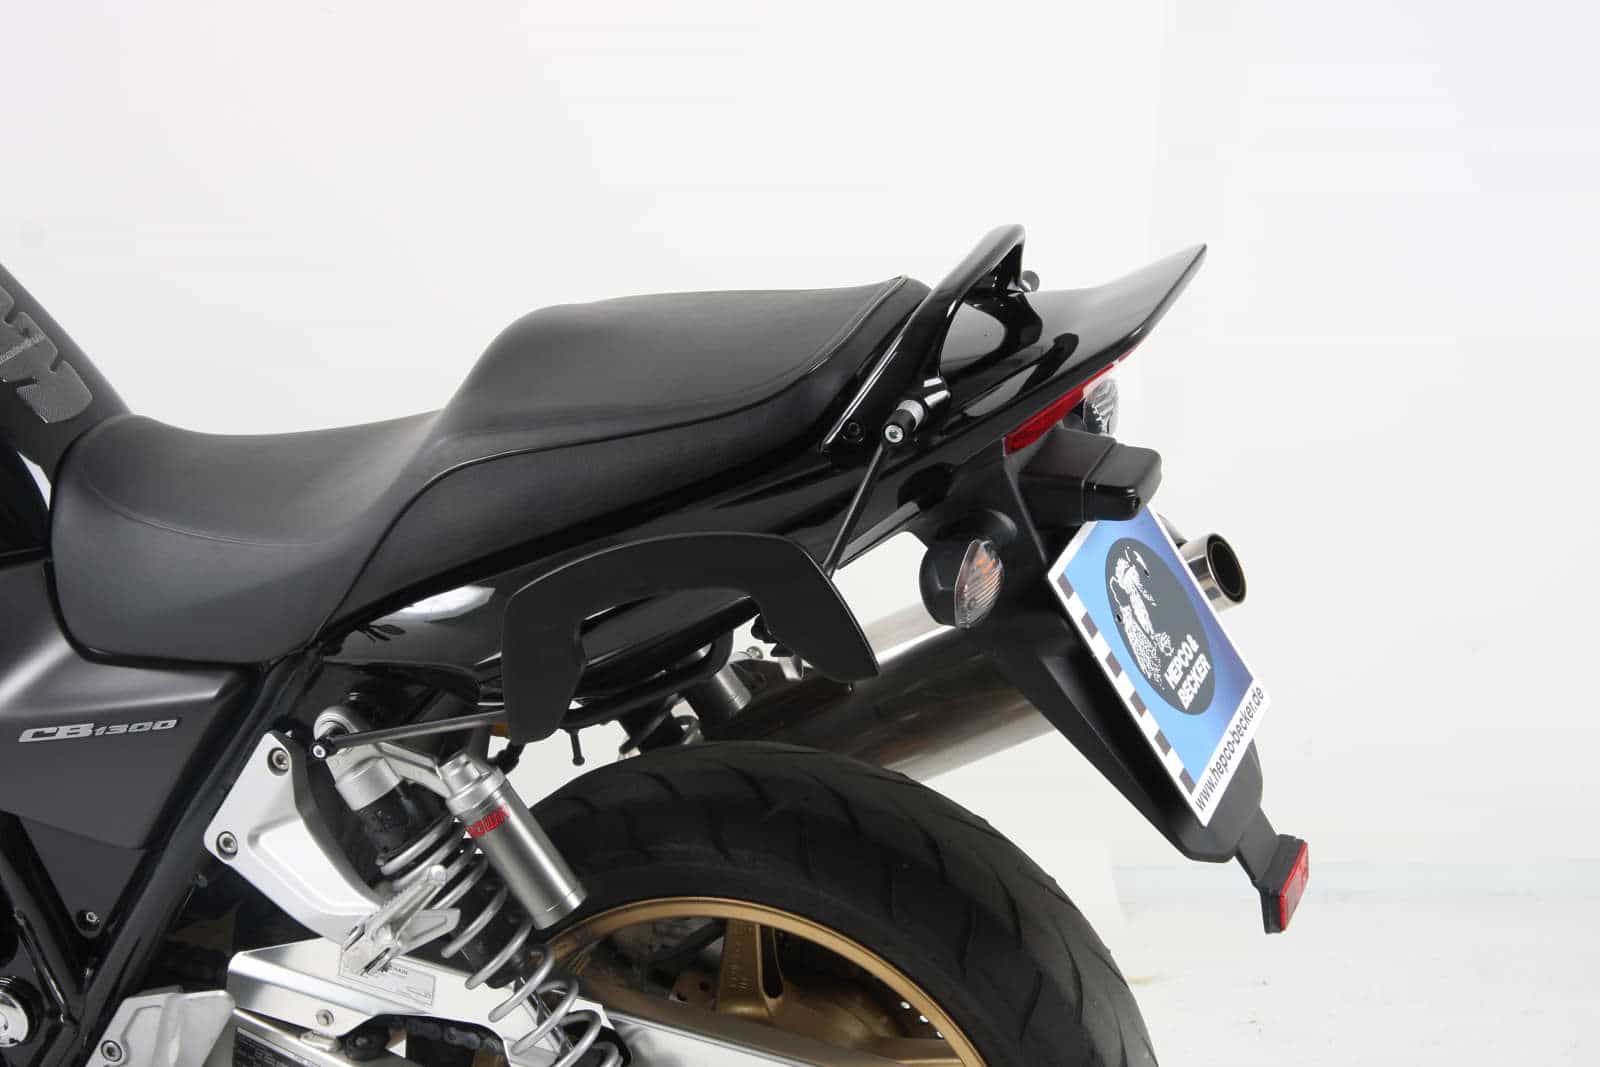 C-Bow sidecarrier for Honda CB 1300 (2003-2009)